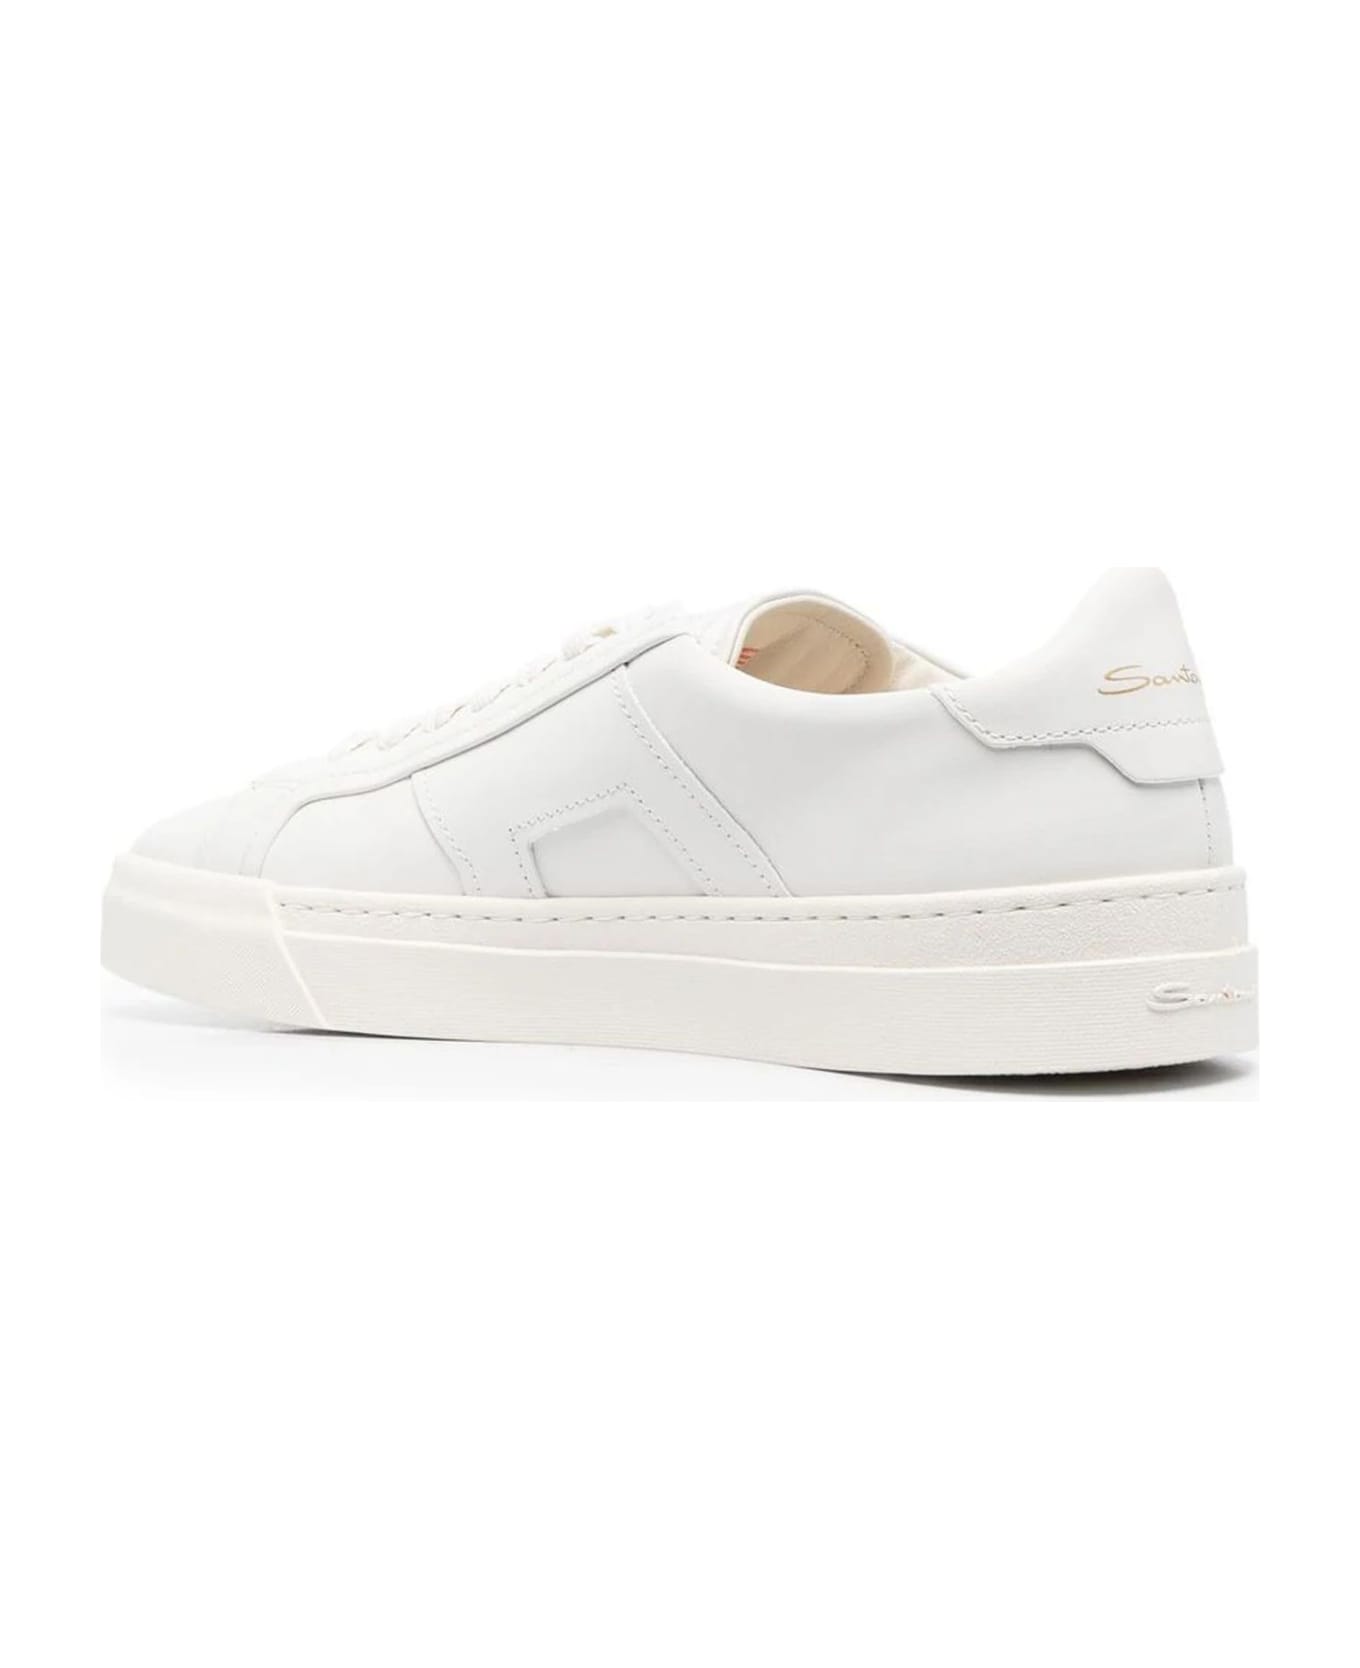 Santoni White Leather Sneakers - White